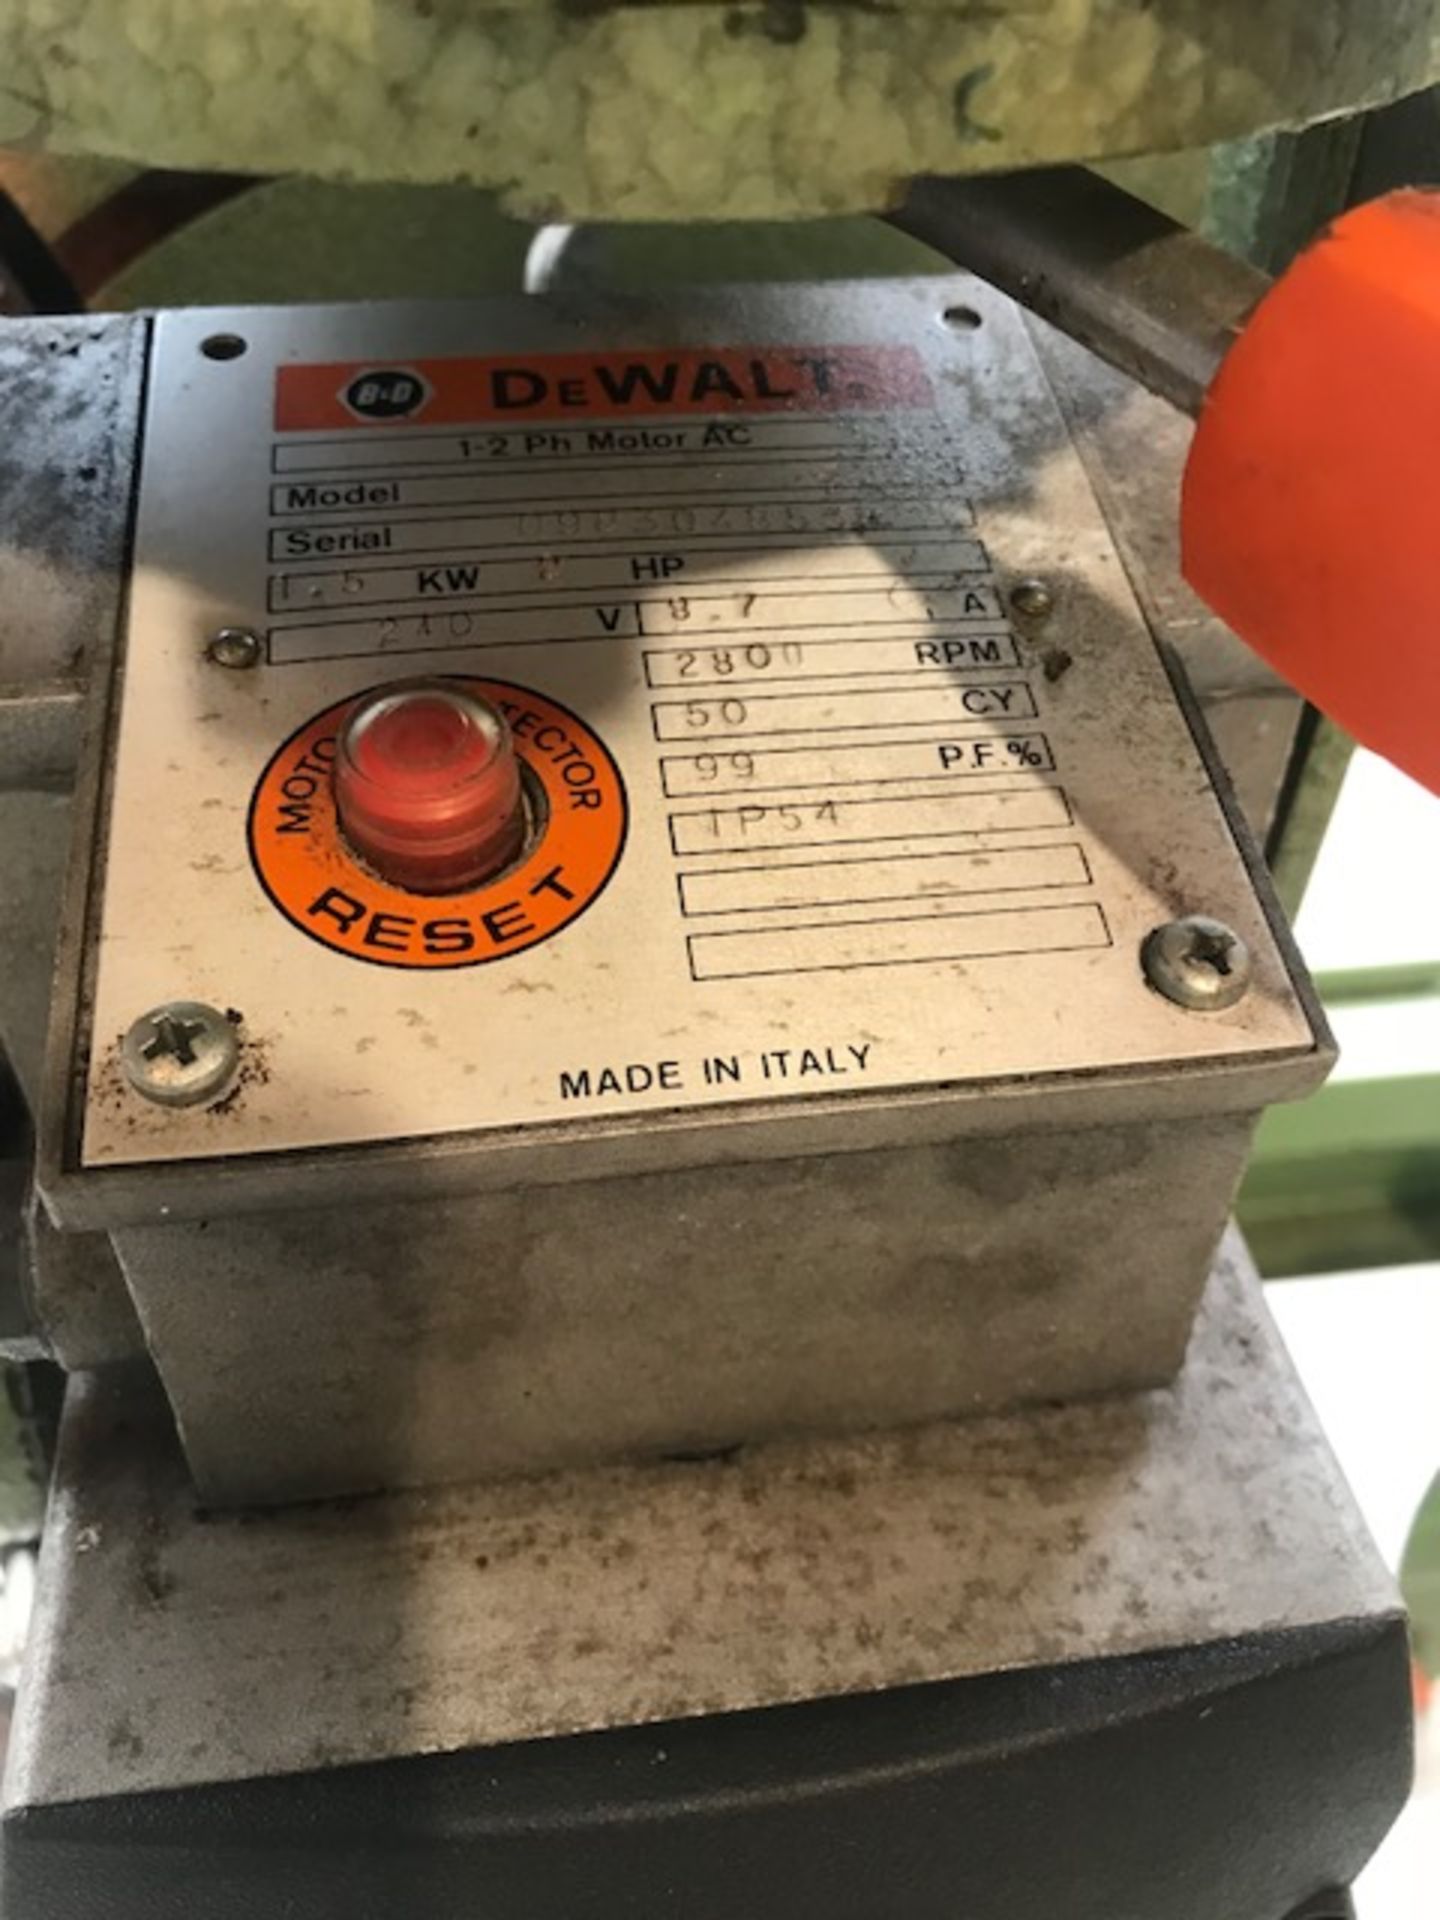 DeWalt 1370 Radial Arm Saw, 240V - Image 2 of 3